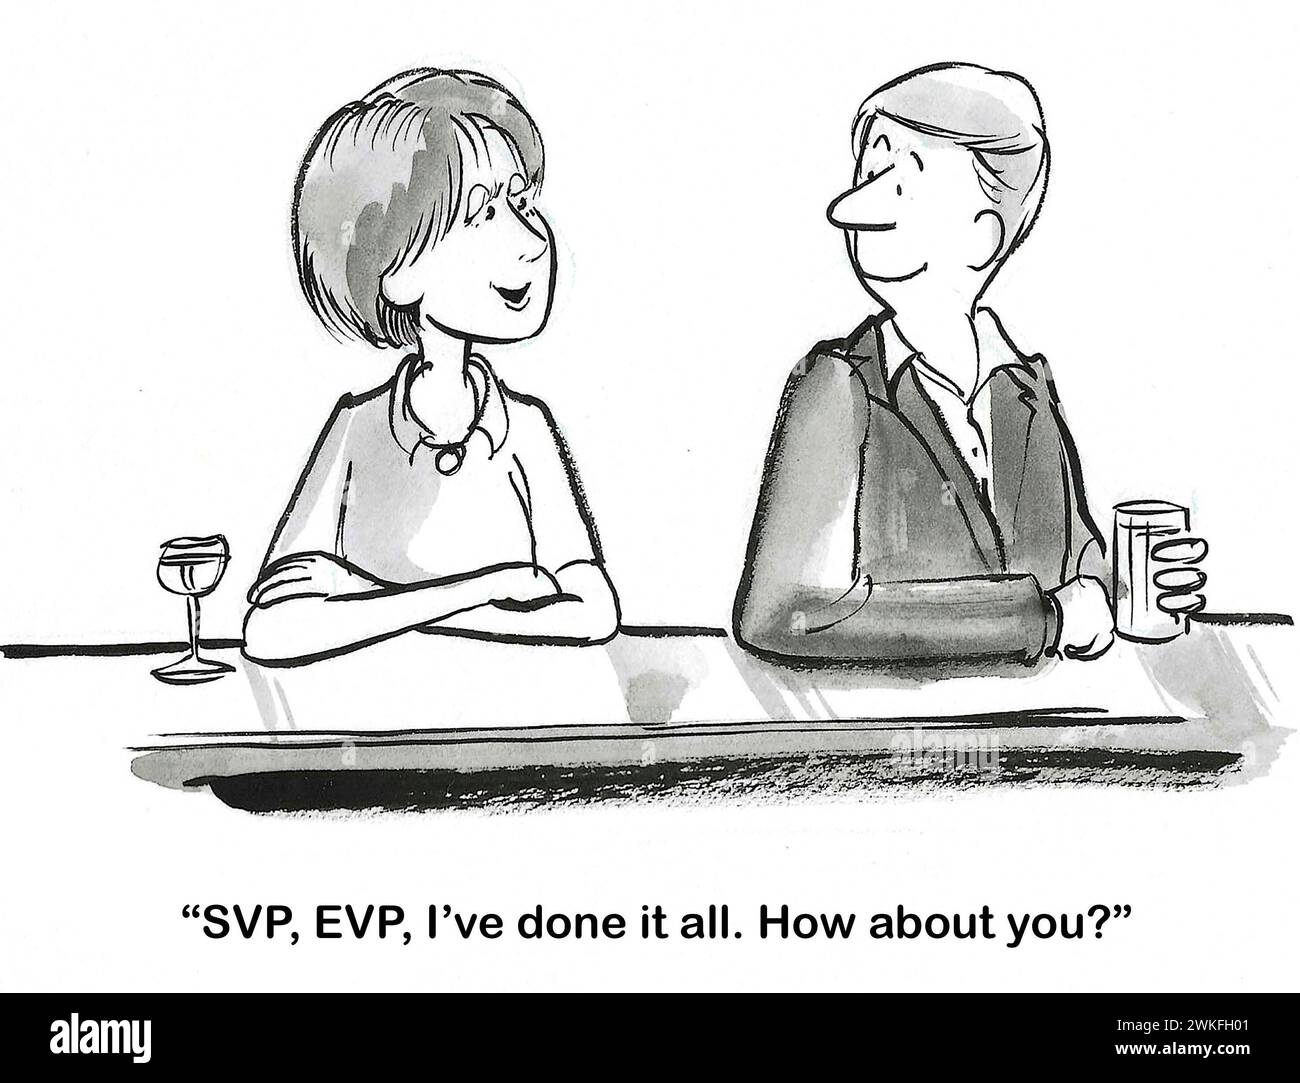 BW-Cartoon, in dem eine Frau einem Mann in einer Bar erzählt, dass sie SVP und EVP gewesen ist - sie hat alles getan. Stockfoto